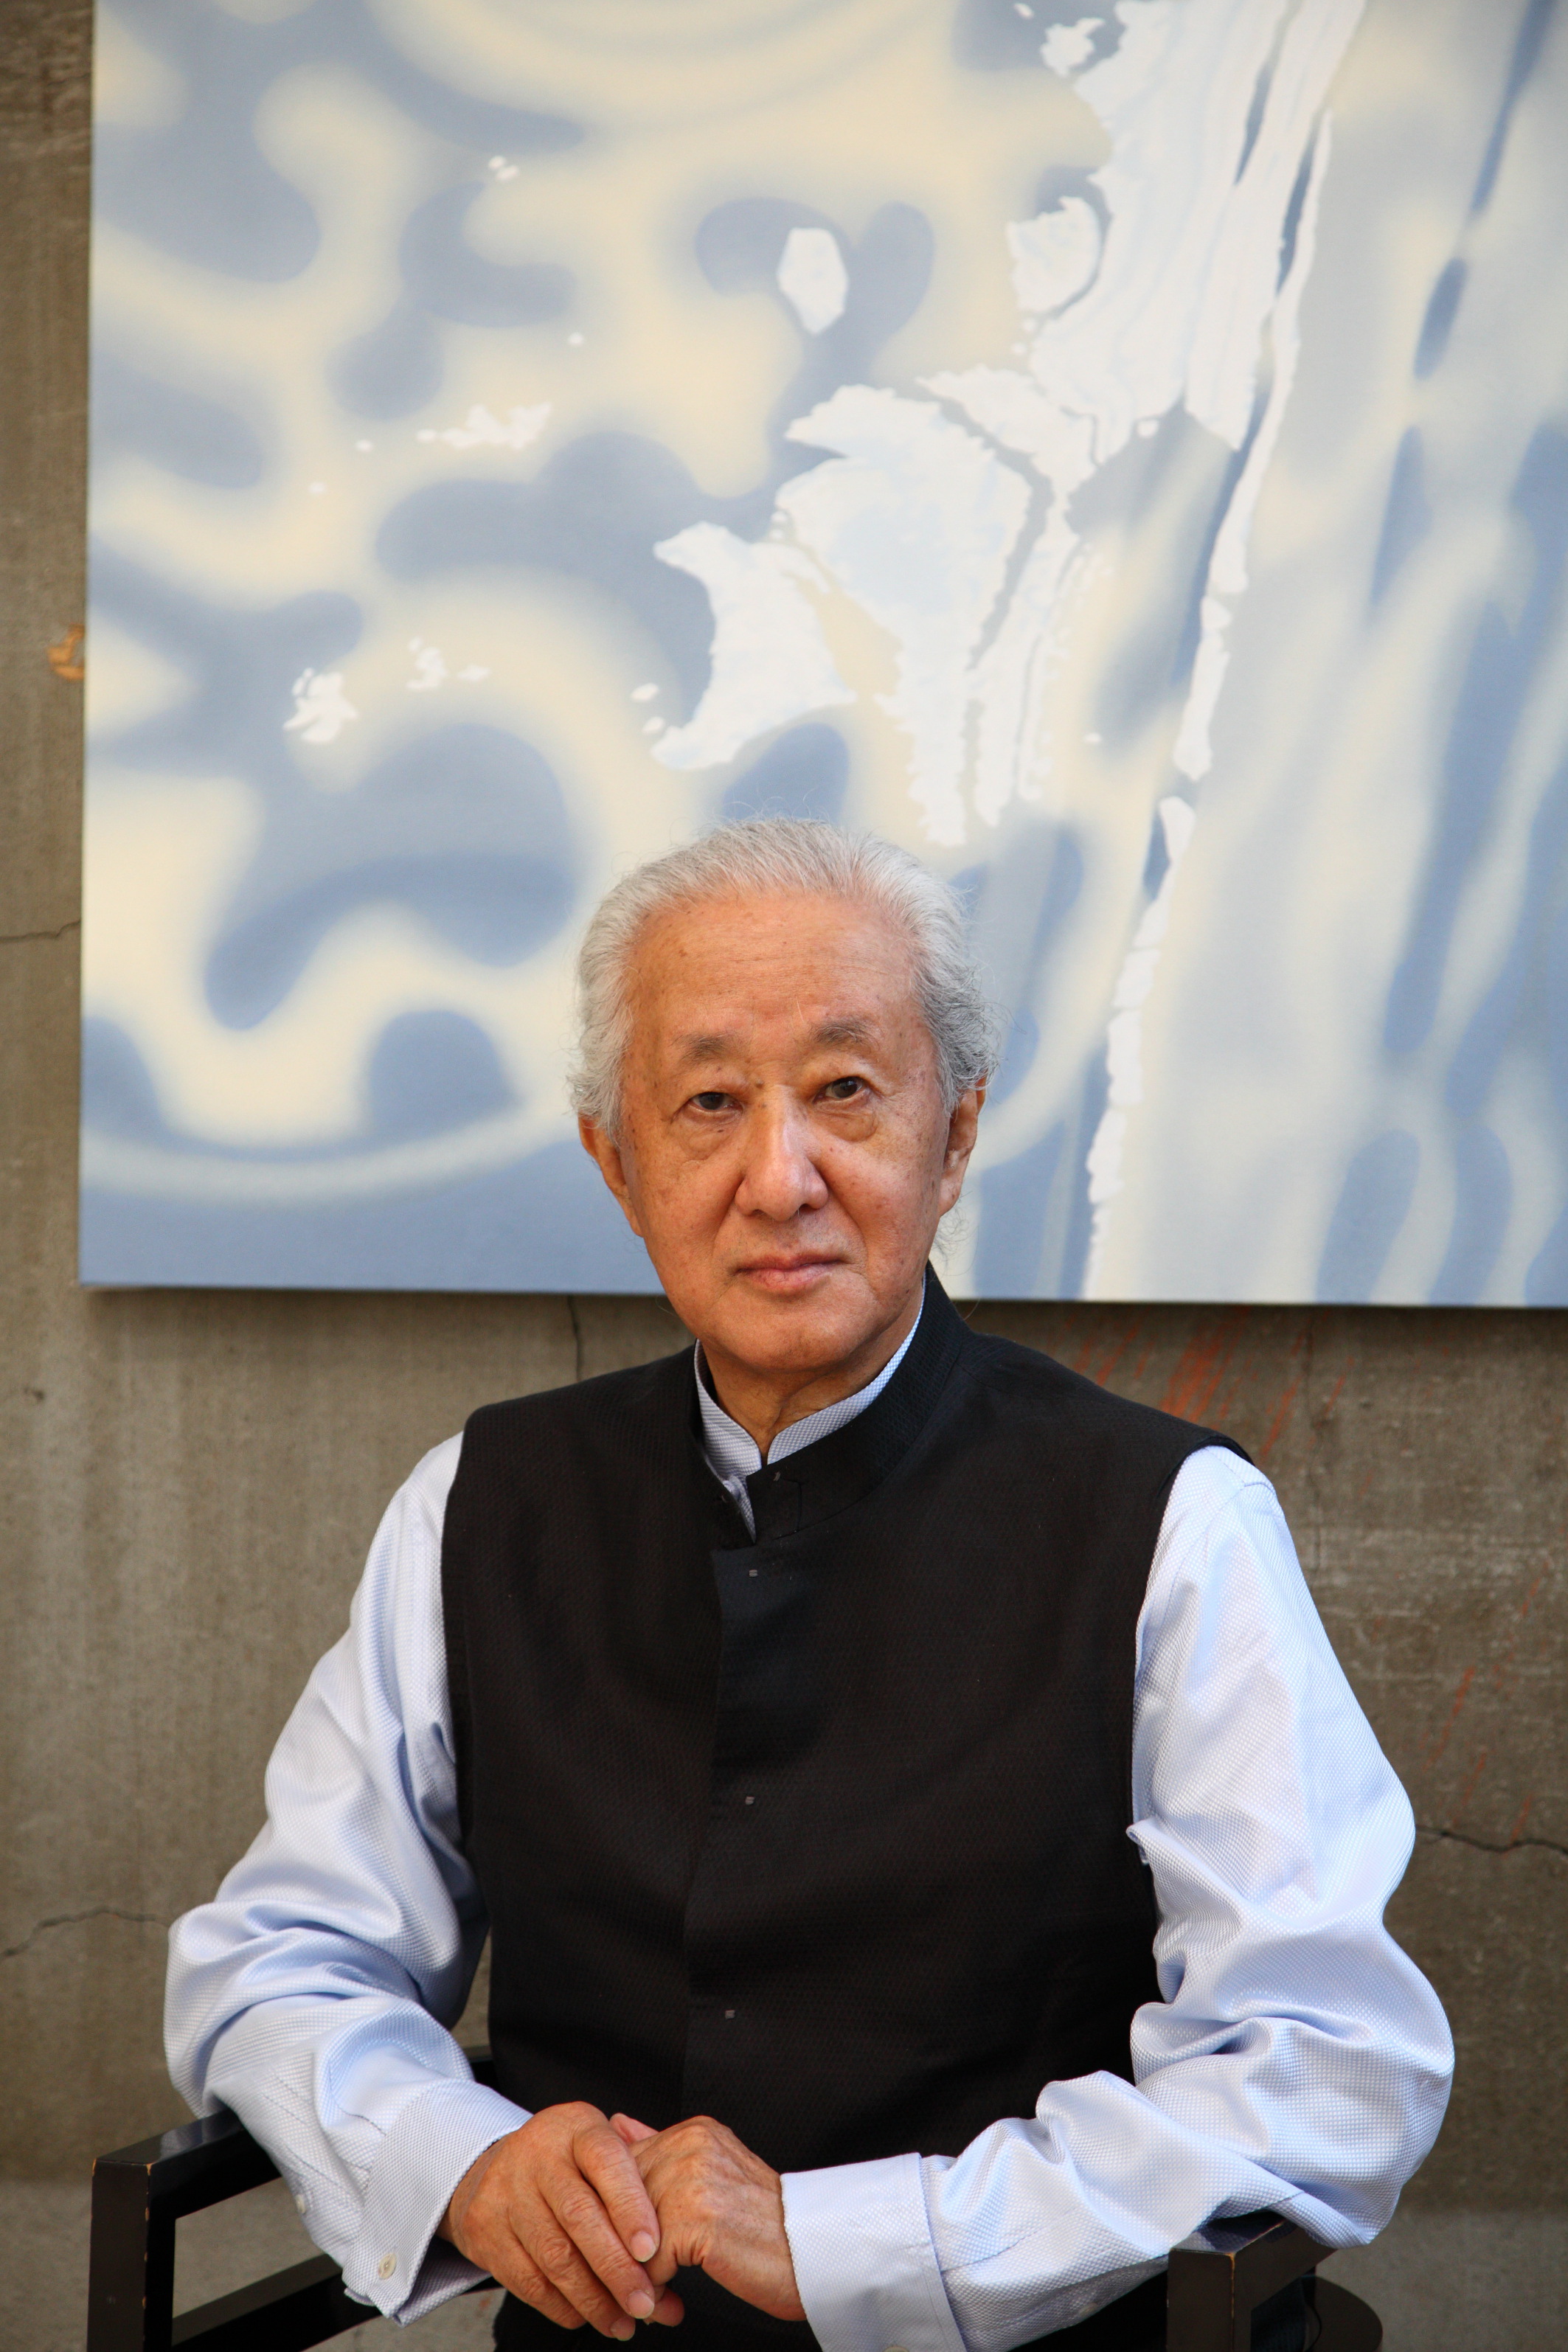 Arata Isozaki, portrait